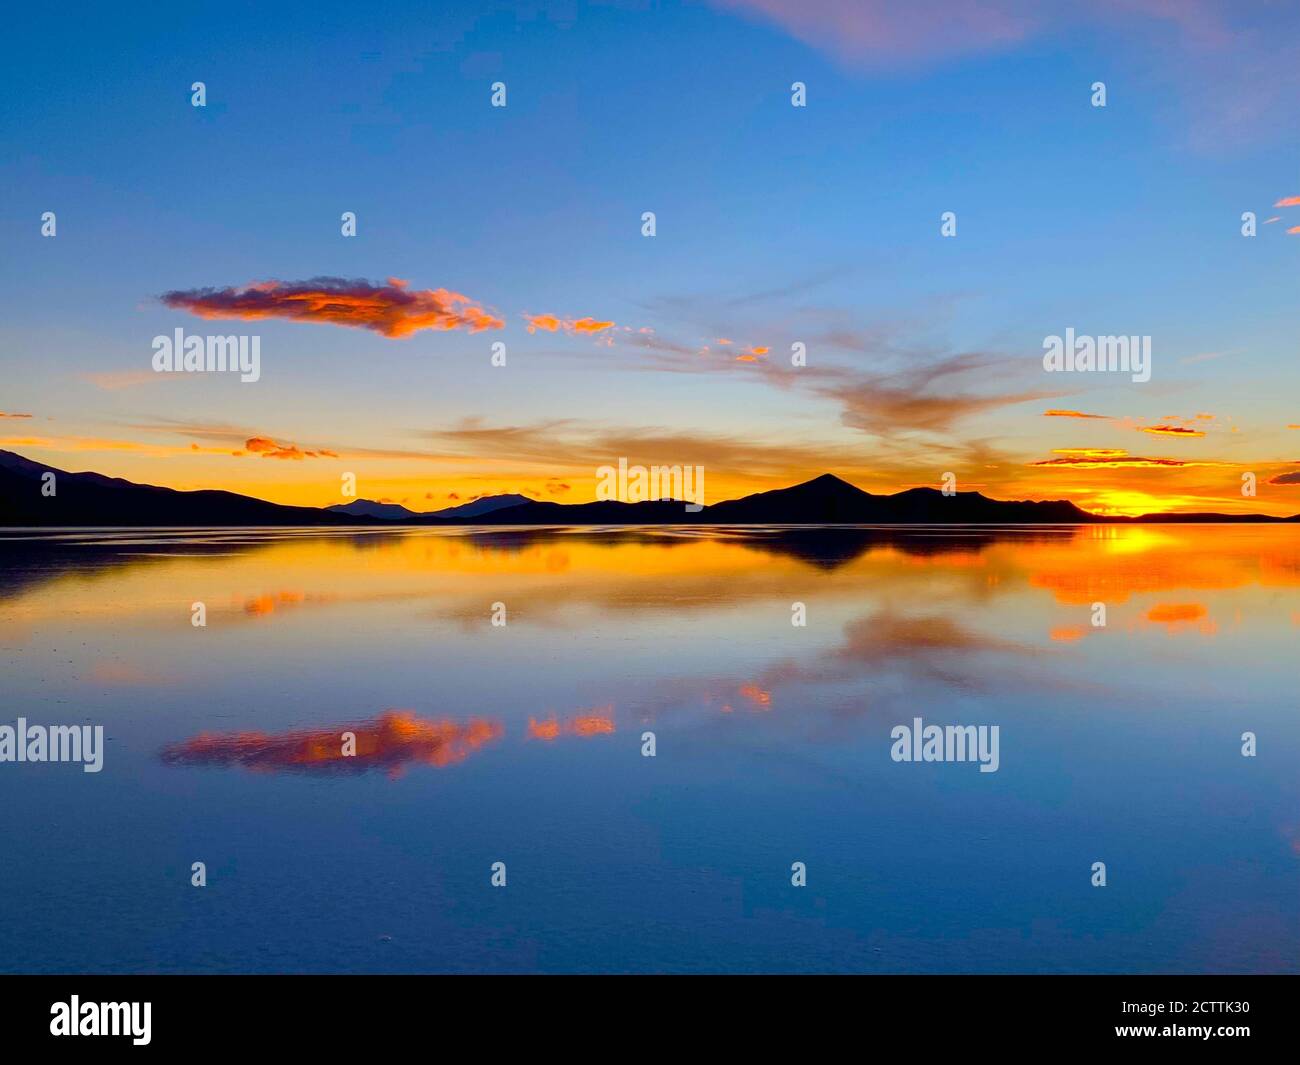 Spektakuläre Sonnenuntergangsspiegelung im Salzwasser. Dramatischer Sonnenuntergang. Wüstensee Salar de Uyuni. Farbiger Himmel. Wunderschöne Sonnenuntergänge in den bolivianischen Anden Stockfoto